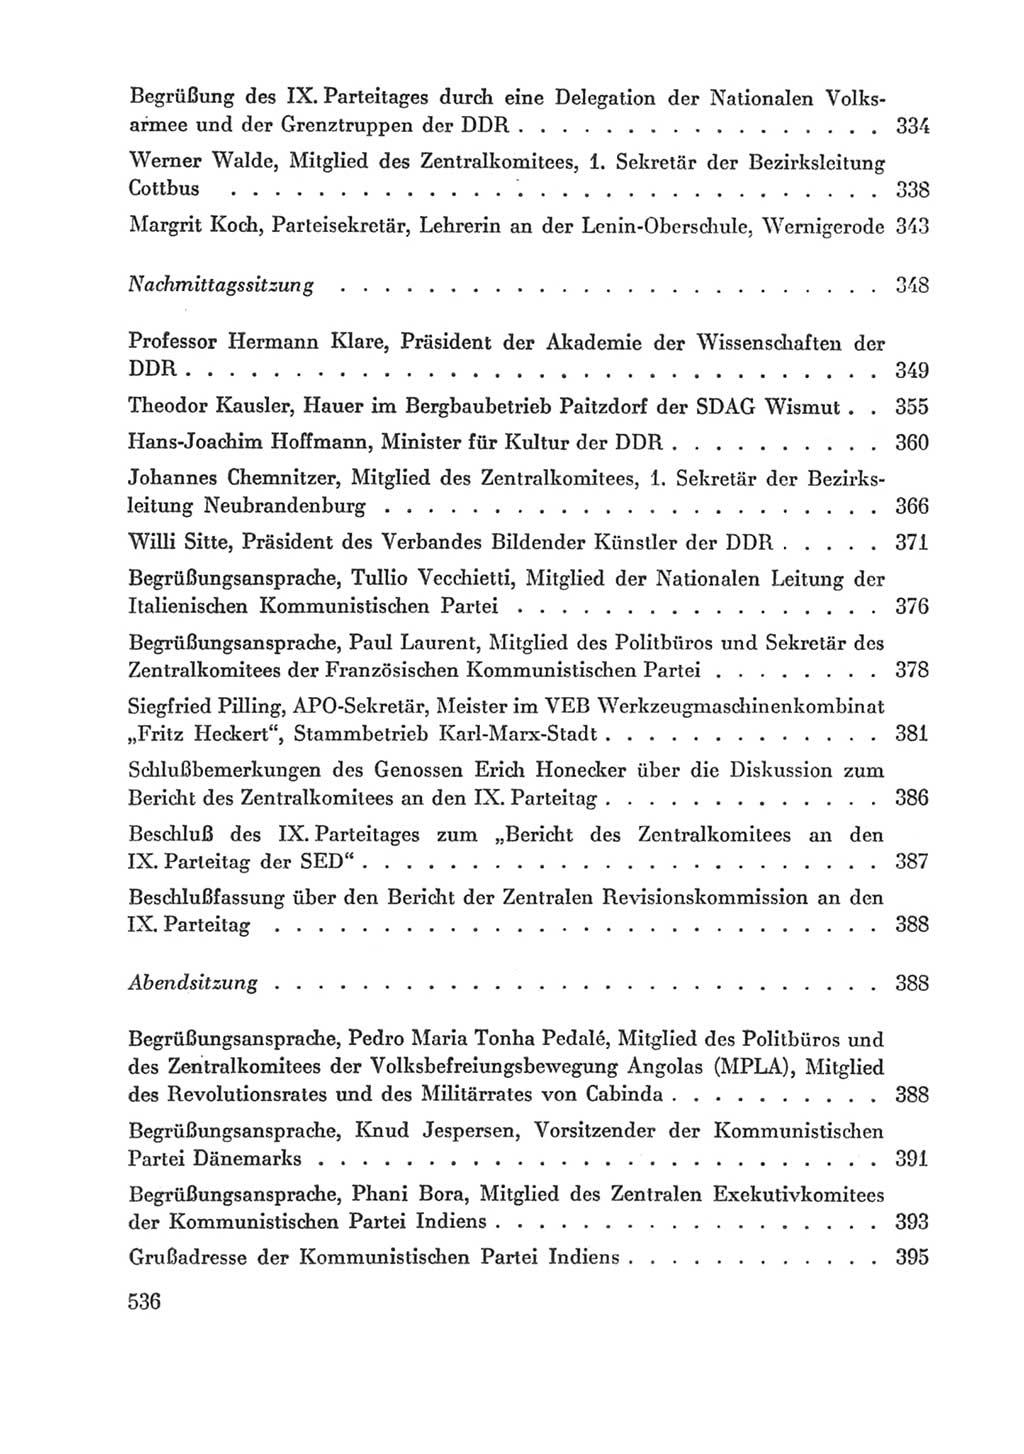 Protokoll der Verhandlungen des Ⅸ. Parteitages der Sozialistischen Einheitspartei Deutschlands (SED) [Deutsche Demokratische Republik (DDR)] 1976, Band 1, Seite 536 (Prot. Verh. Ⅸ. PT SED DDR 1976, Bd. 1, S. 536)